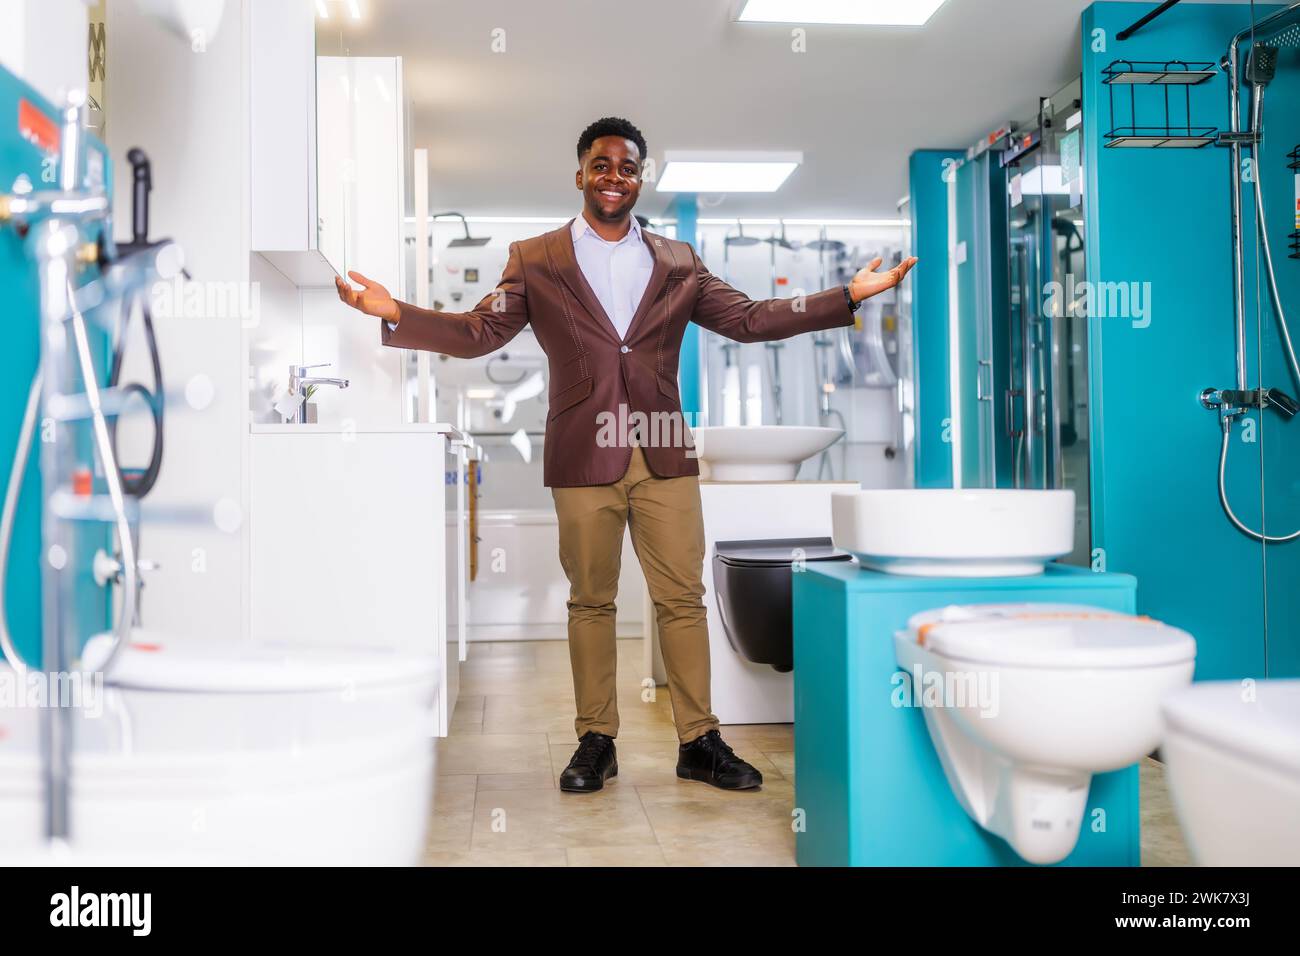 Ritratto del venditore nel negozio di articoli da bagno. L'uomo felice lavora in un negozio di bagni. Occupazione delle vendite. Foto Stock